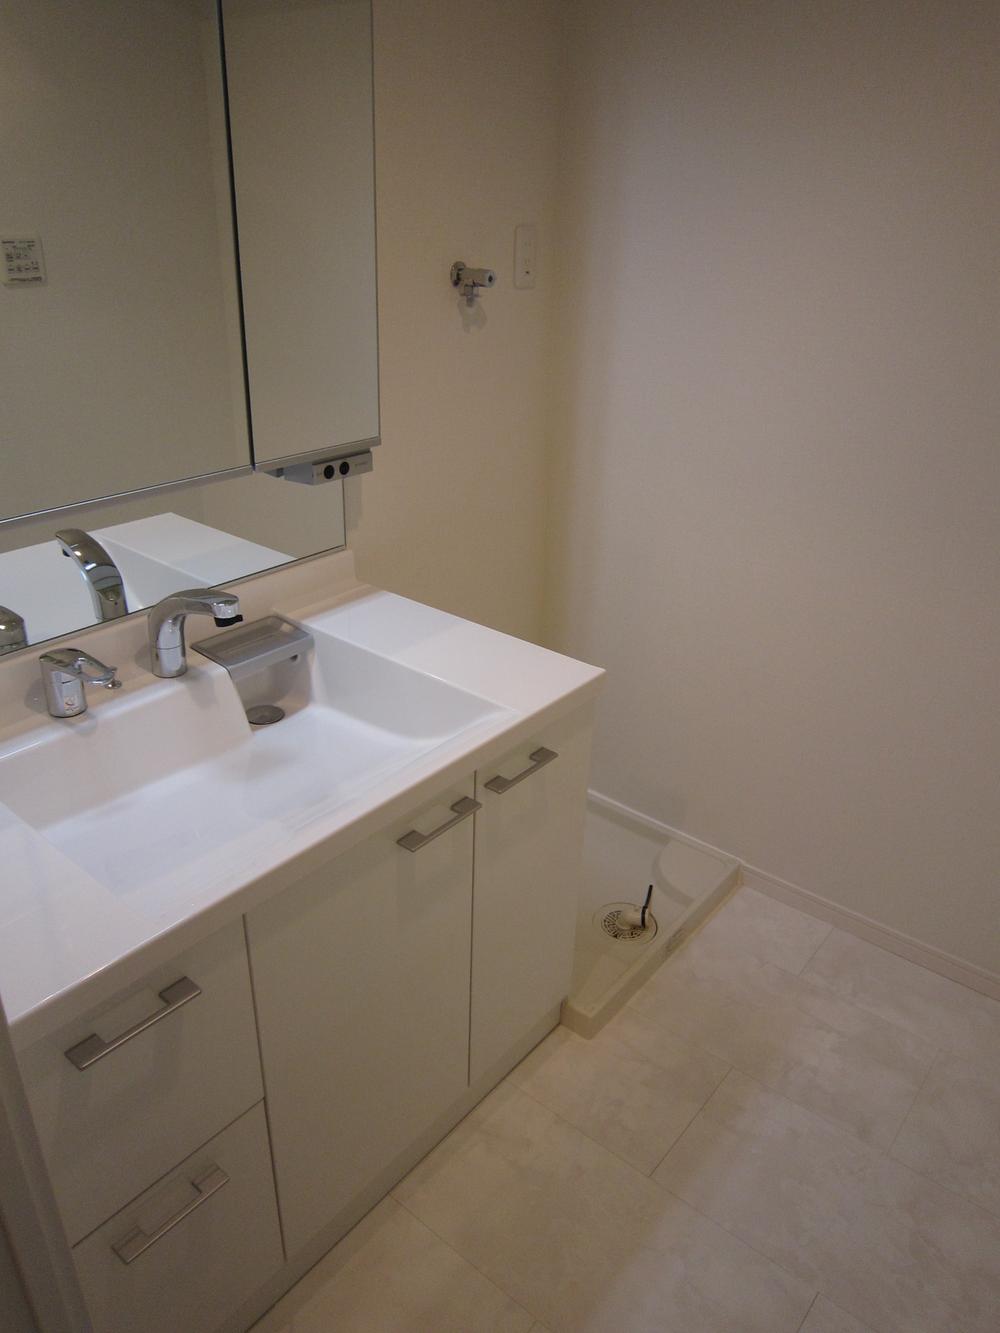 Wash basin, toilet. Indoor (2013 November) shooting